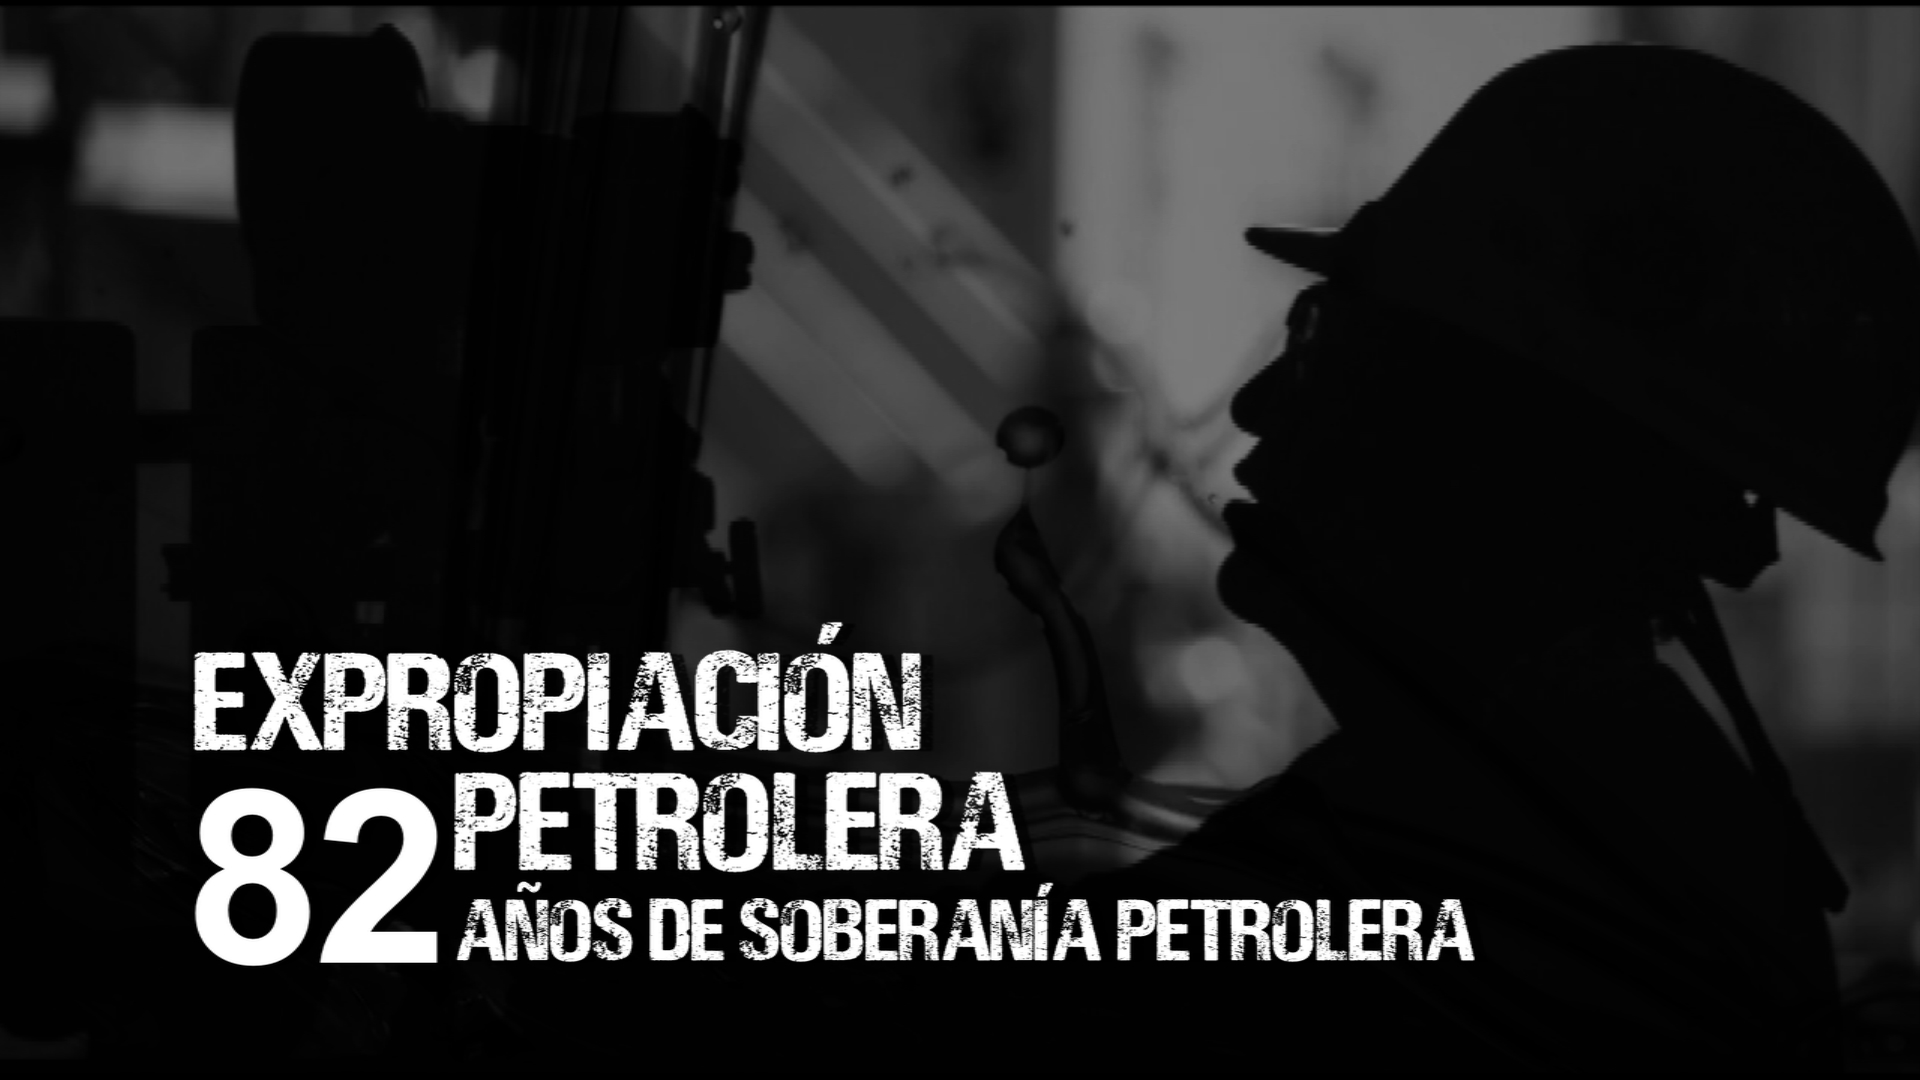 Expropiación petrolera. 82 años de soberanía petrolera